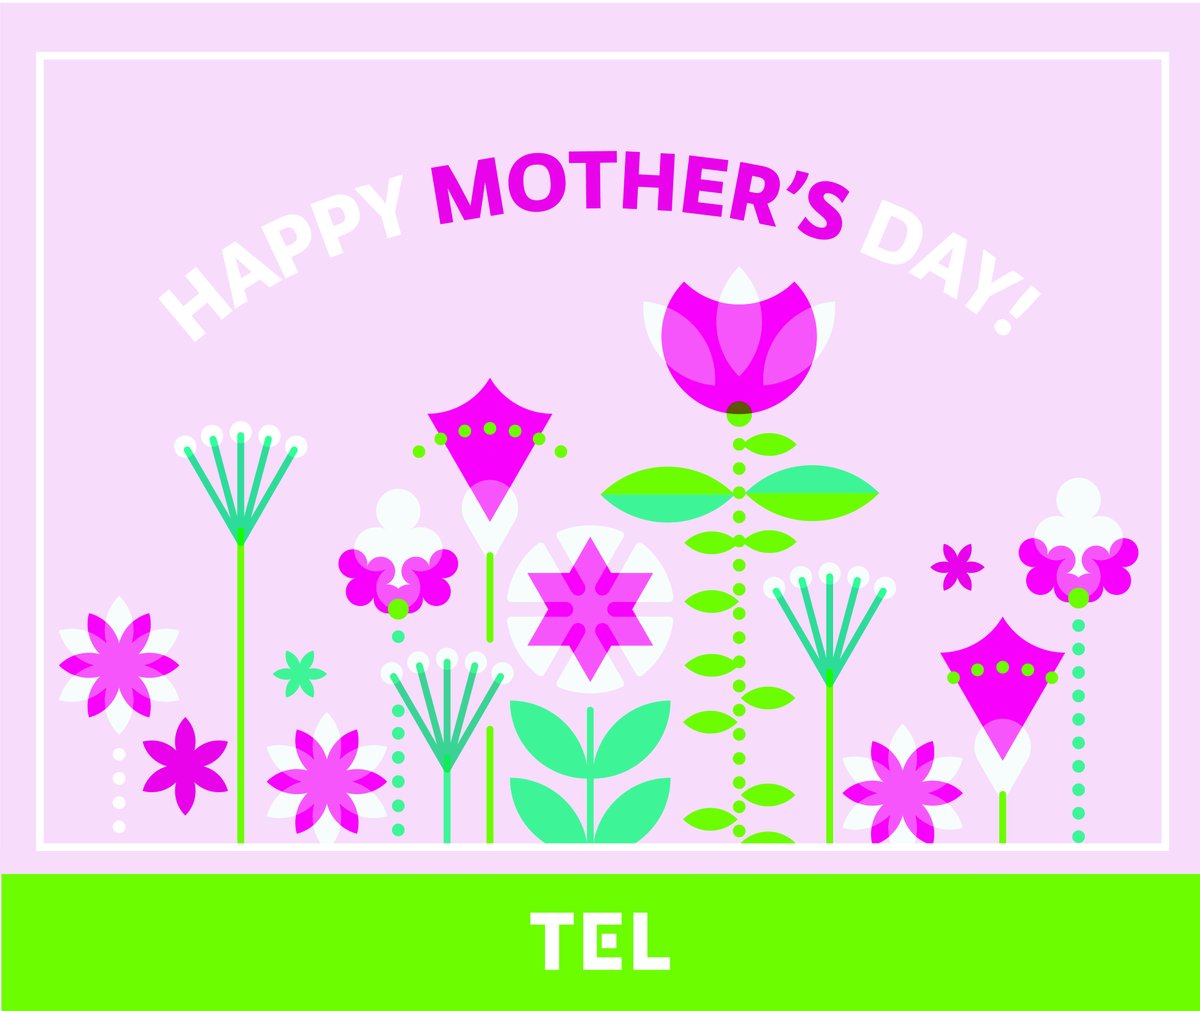 今日5月12日は #母の日 です。お母さんはもちろん、大切な人に感謝の気持ちを伝えたいですね🥰 #東京エレクトロン #TokyoElectron #TEL